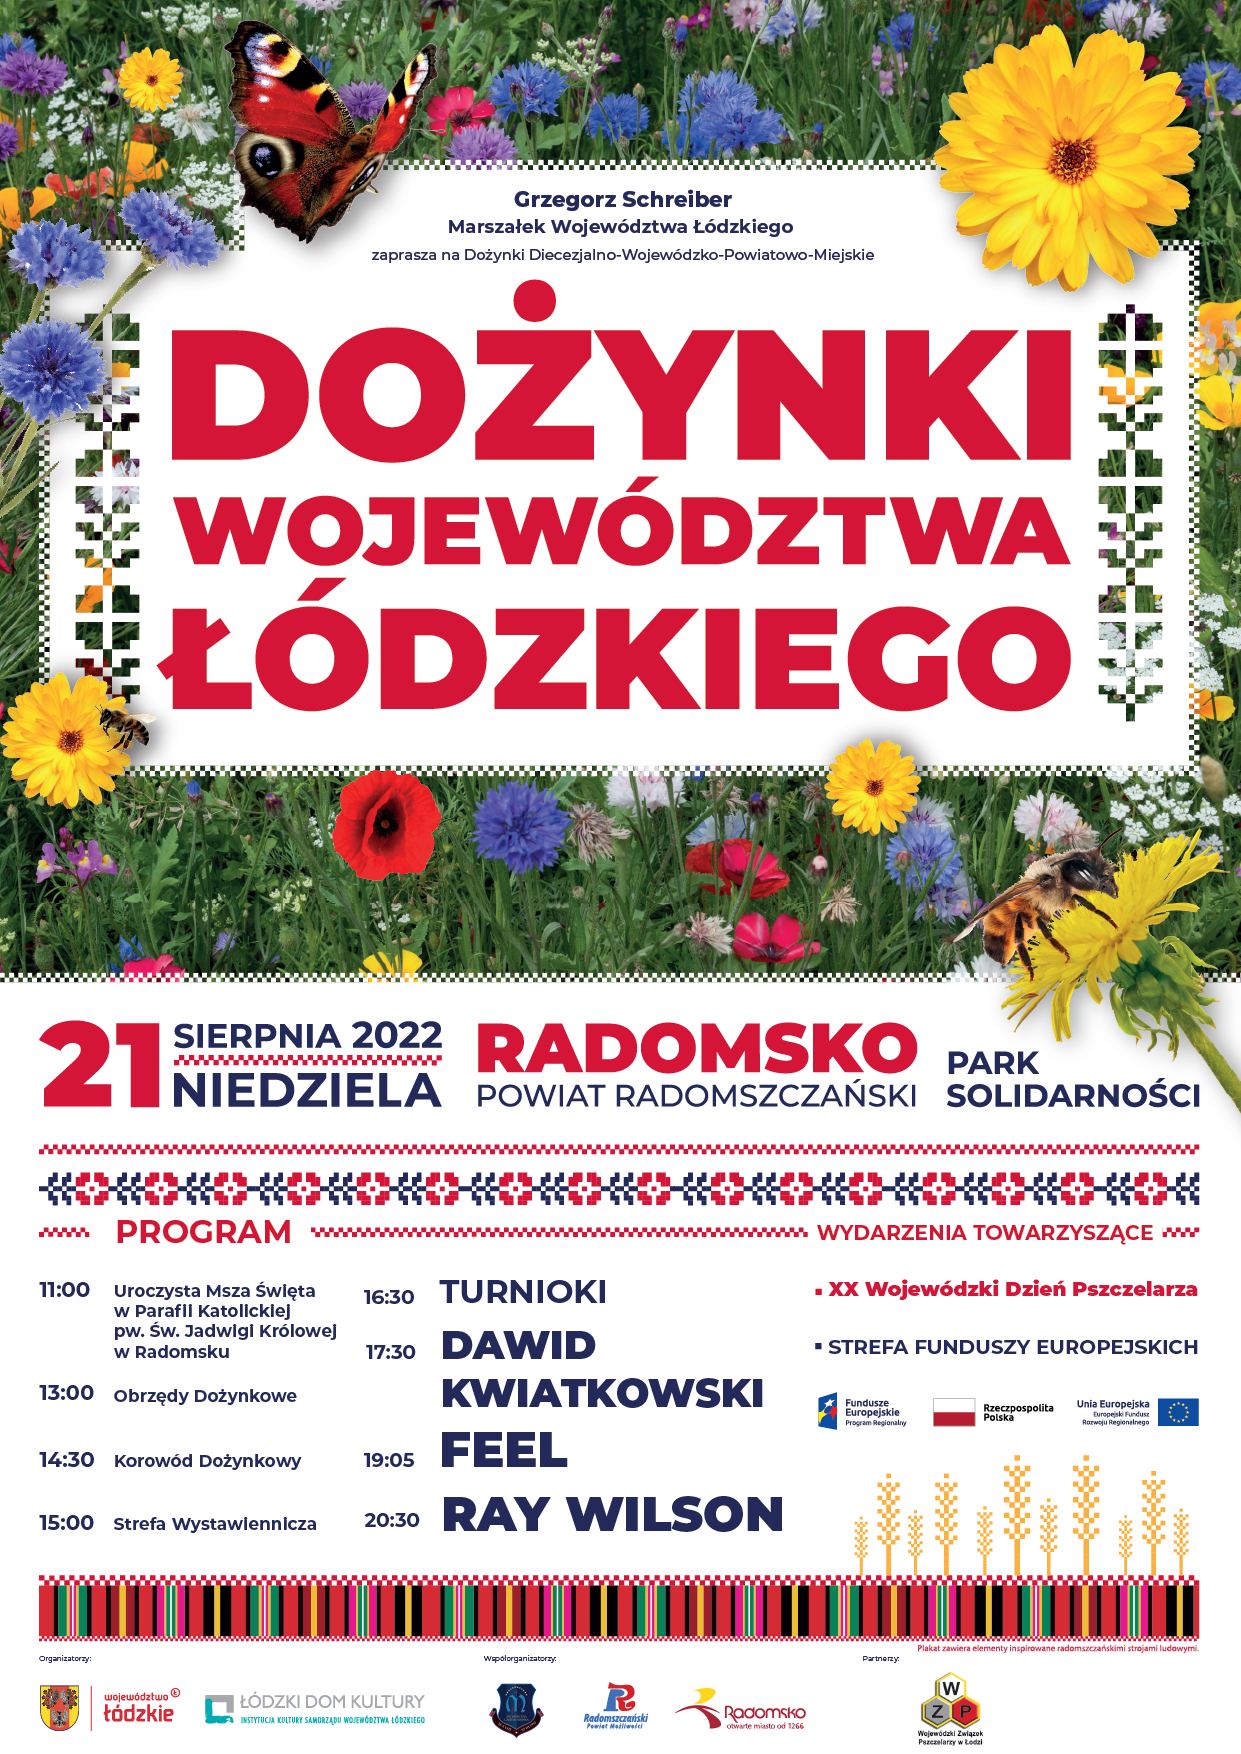 Dożynki Województwa Łódzkiego – 21 sierpinia 2022 Niedziela Radomsko Park Solidarności